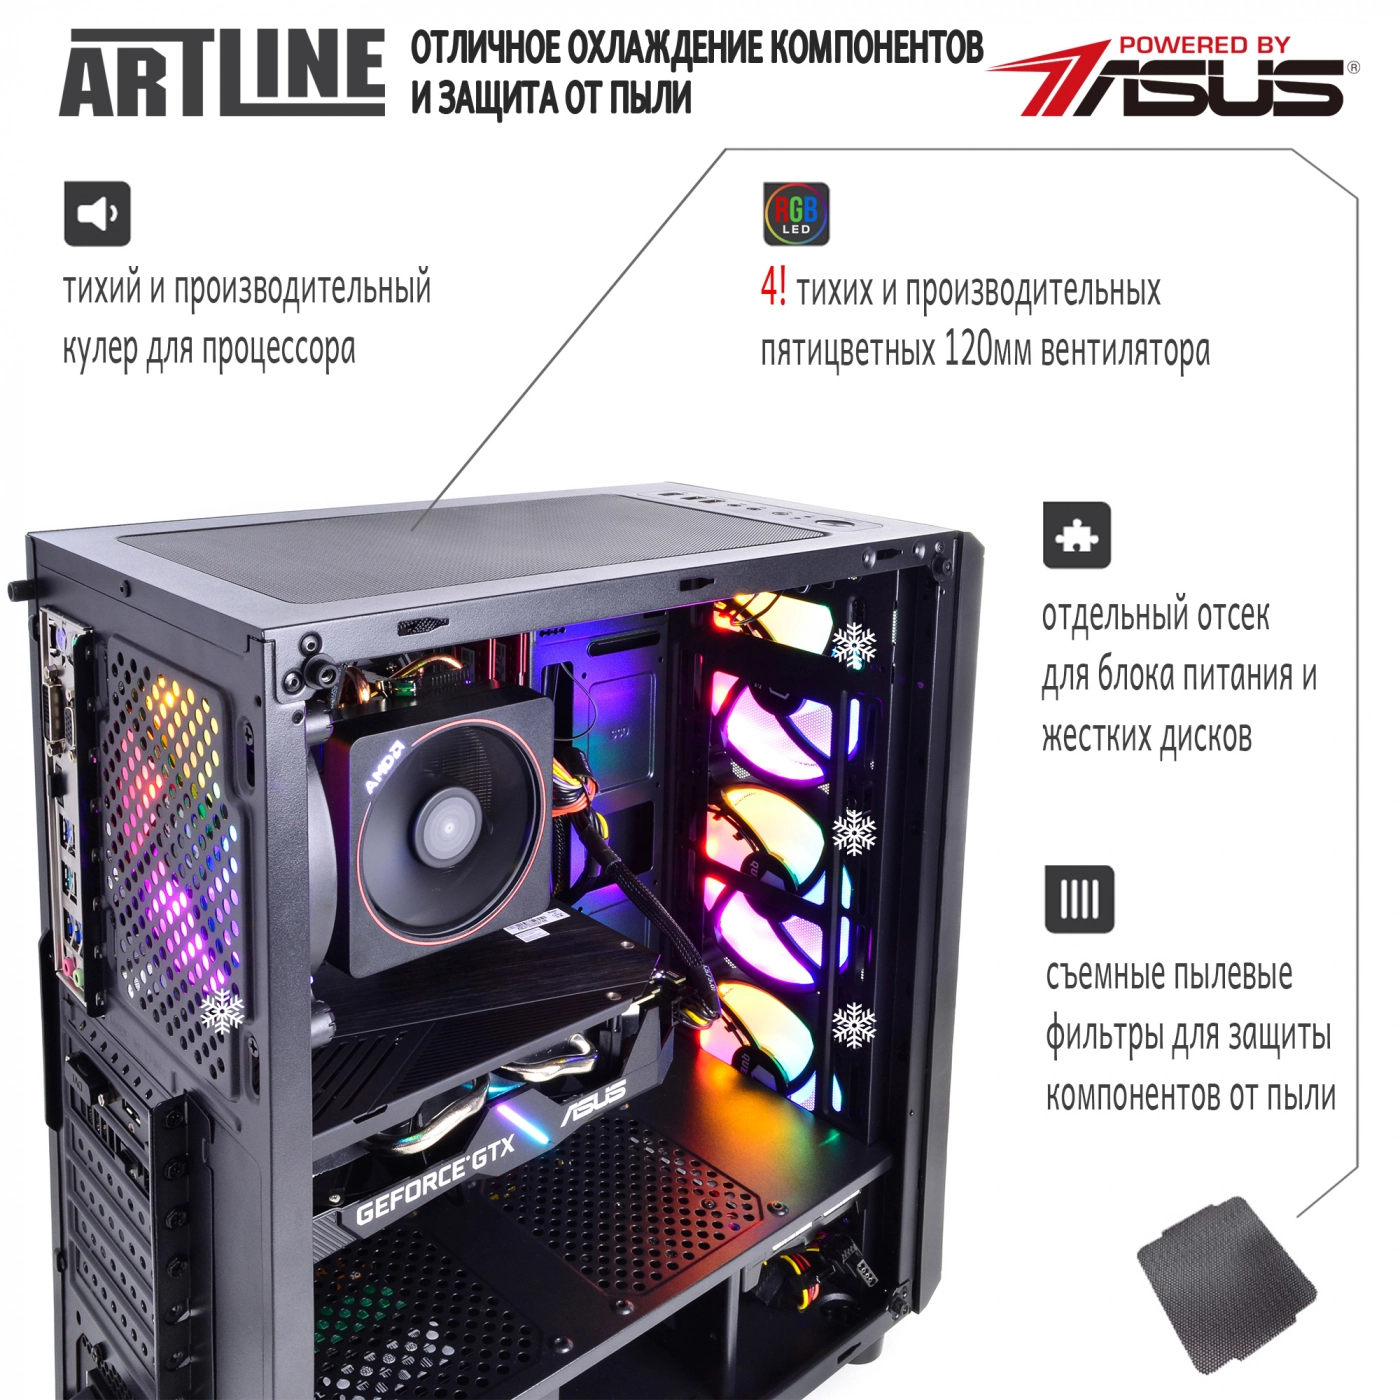 Купить Компьютер ARTLINE Gaming X46v17 - фото 4